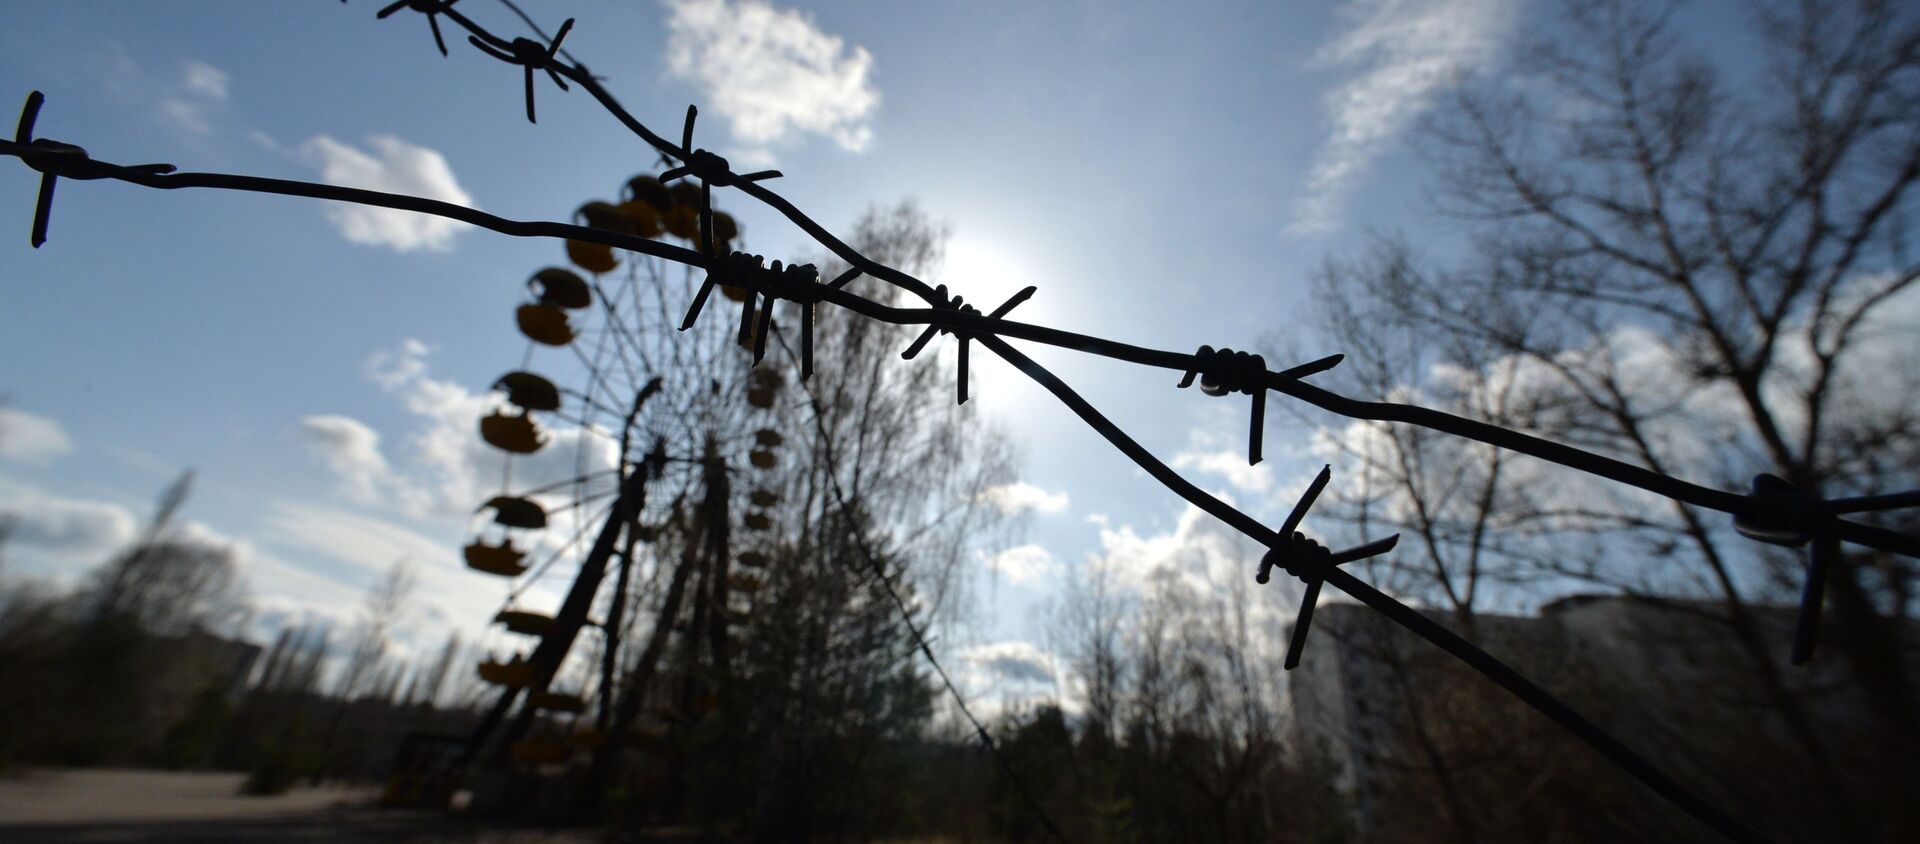 Prípiat cumple 50 años: la ciudad fantasma que sufrió Chernóbil - Sputnik Mundo, 1920, 04.02.2020